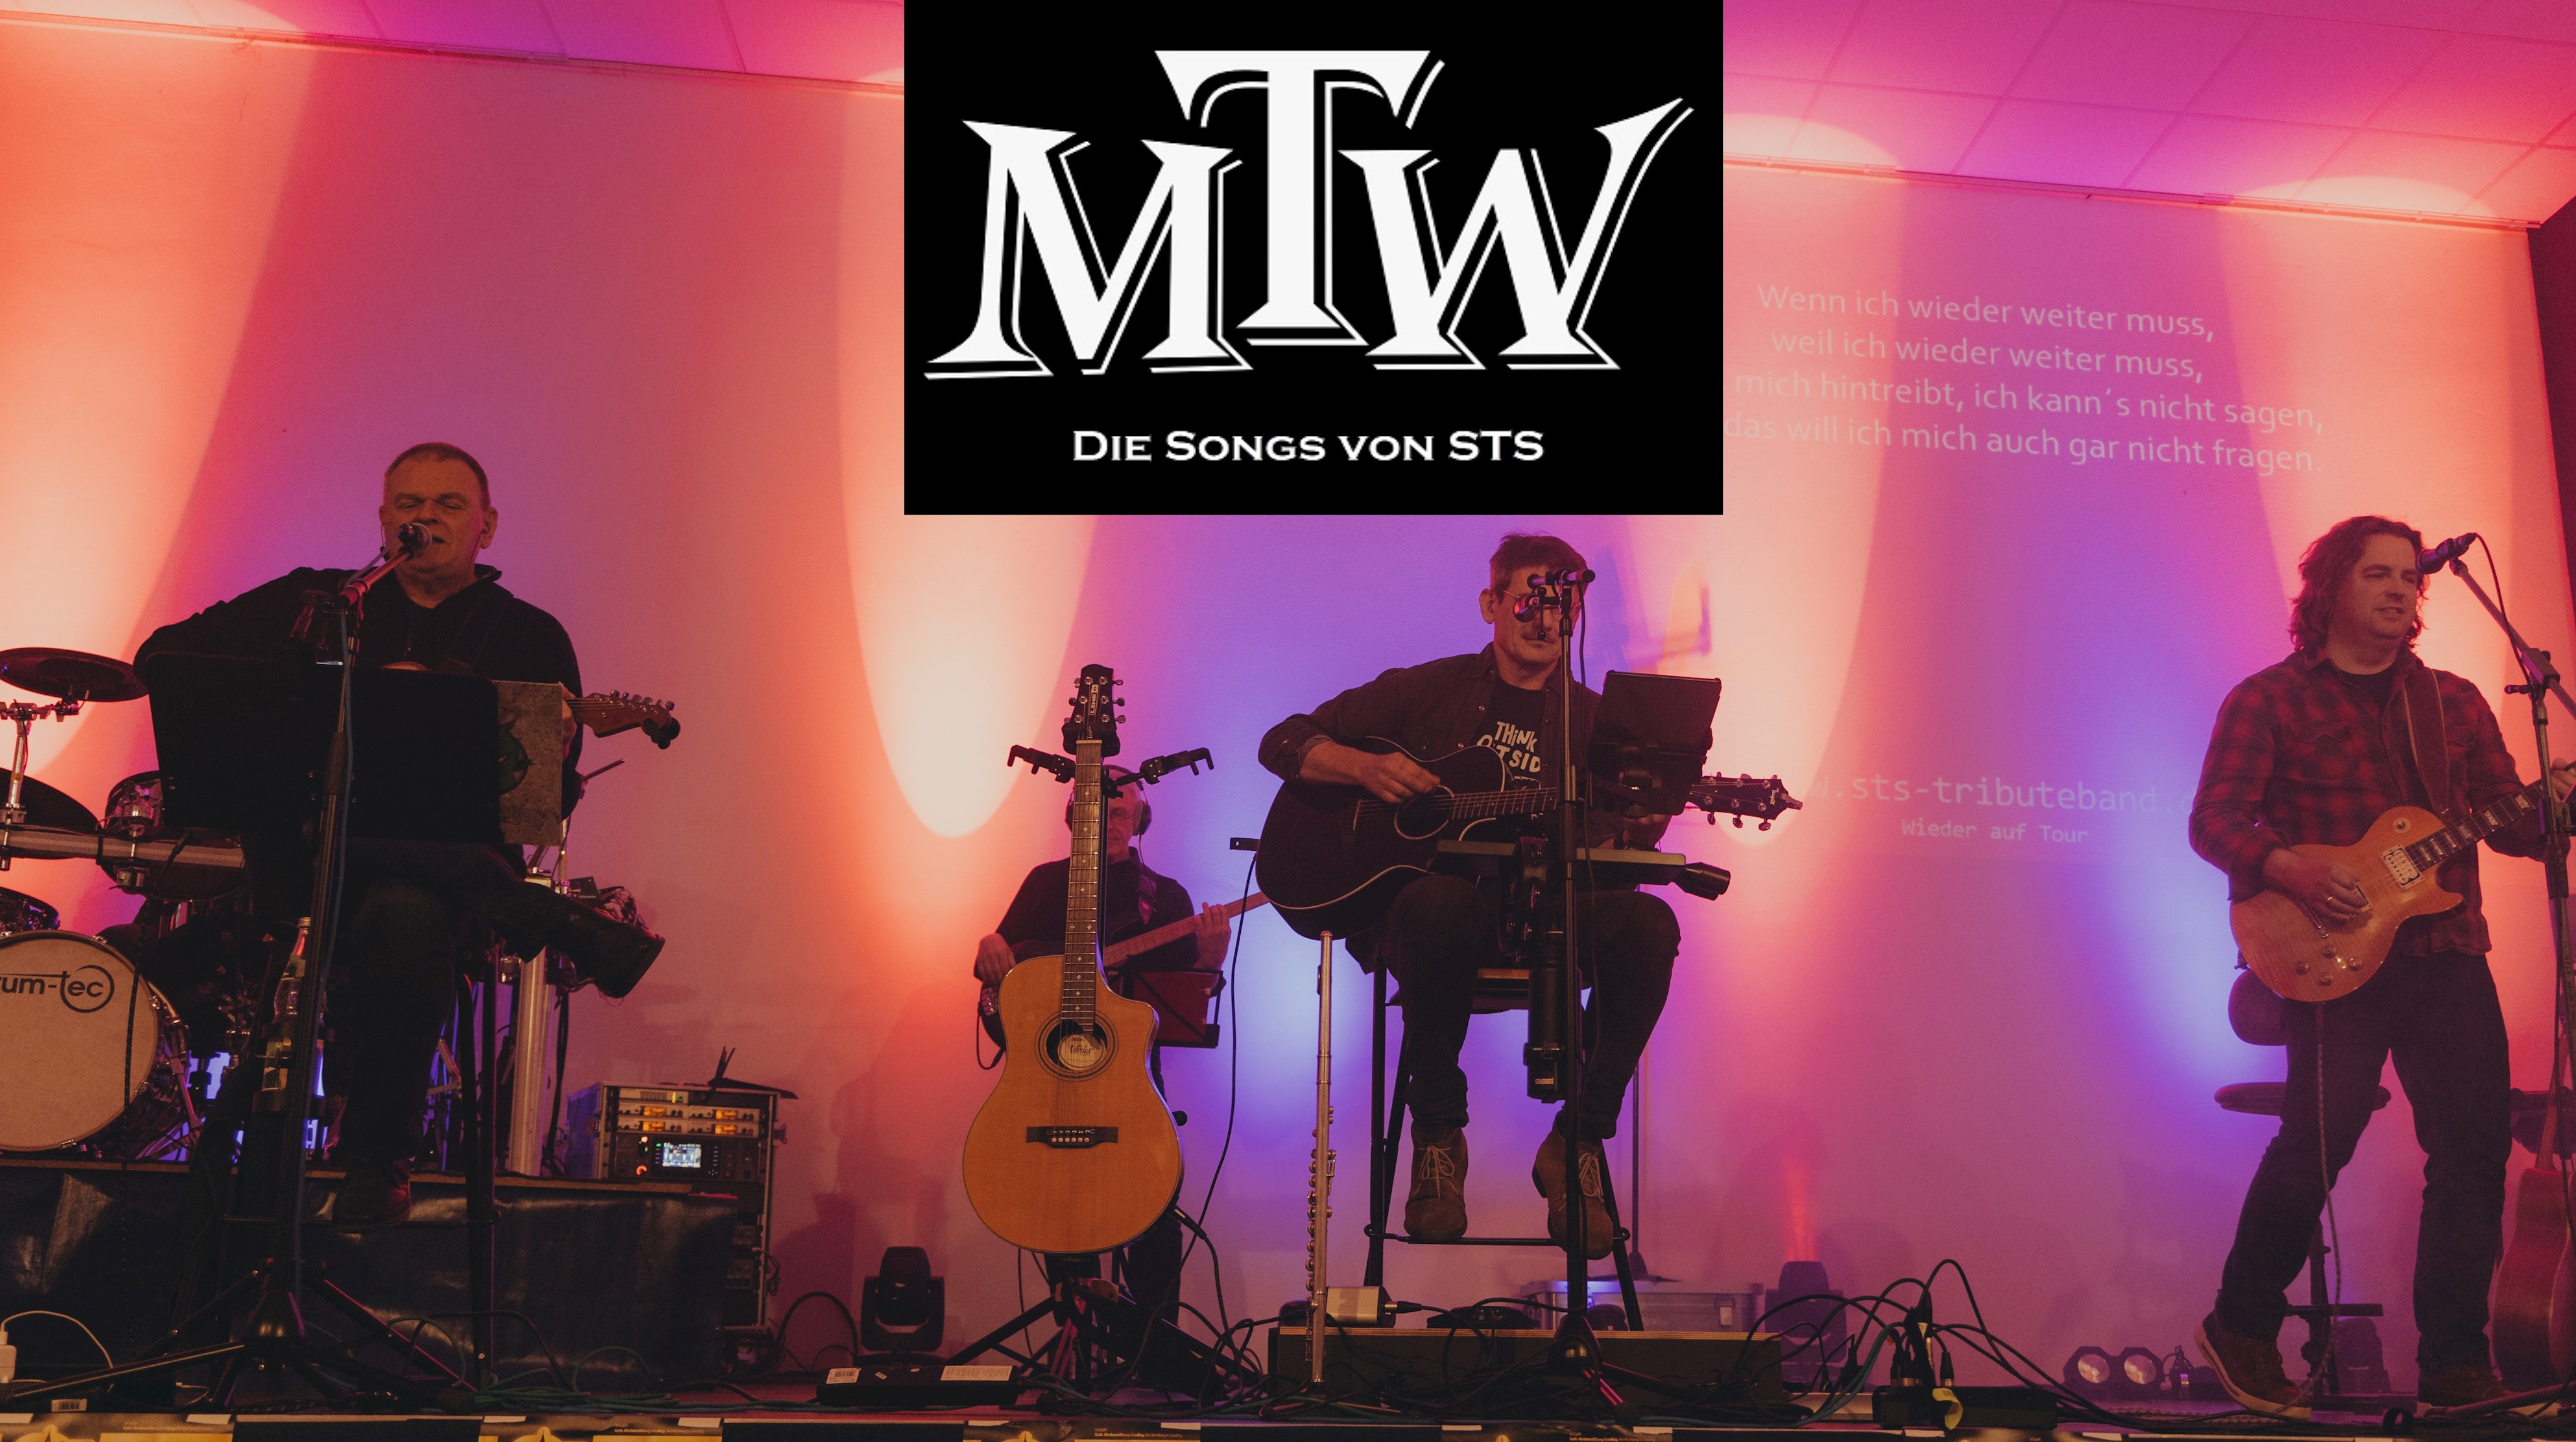 MTW – Die Songs von S.T.S.